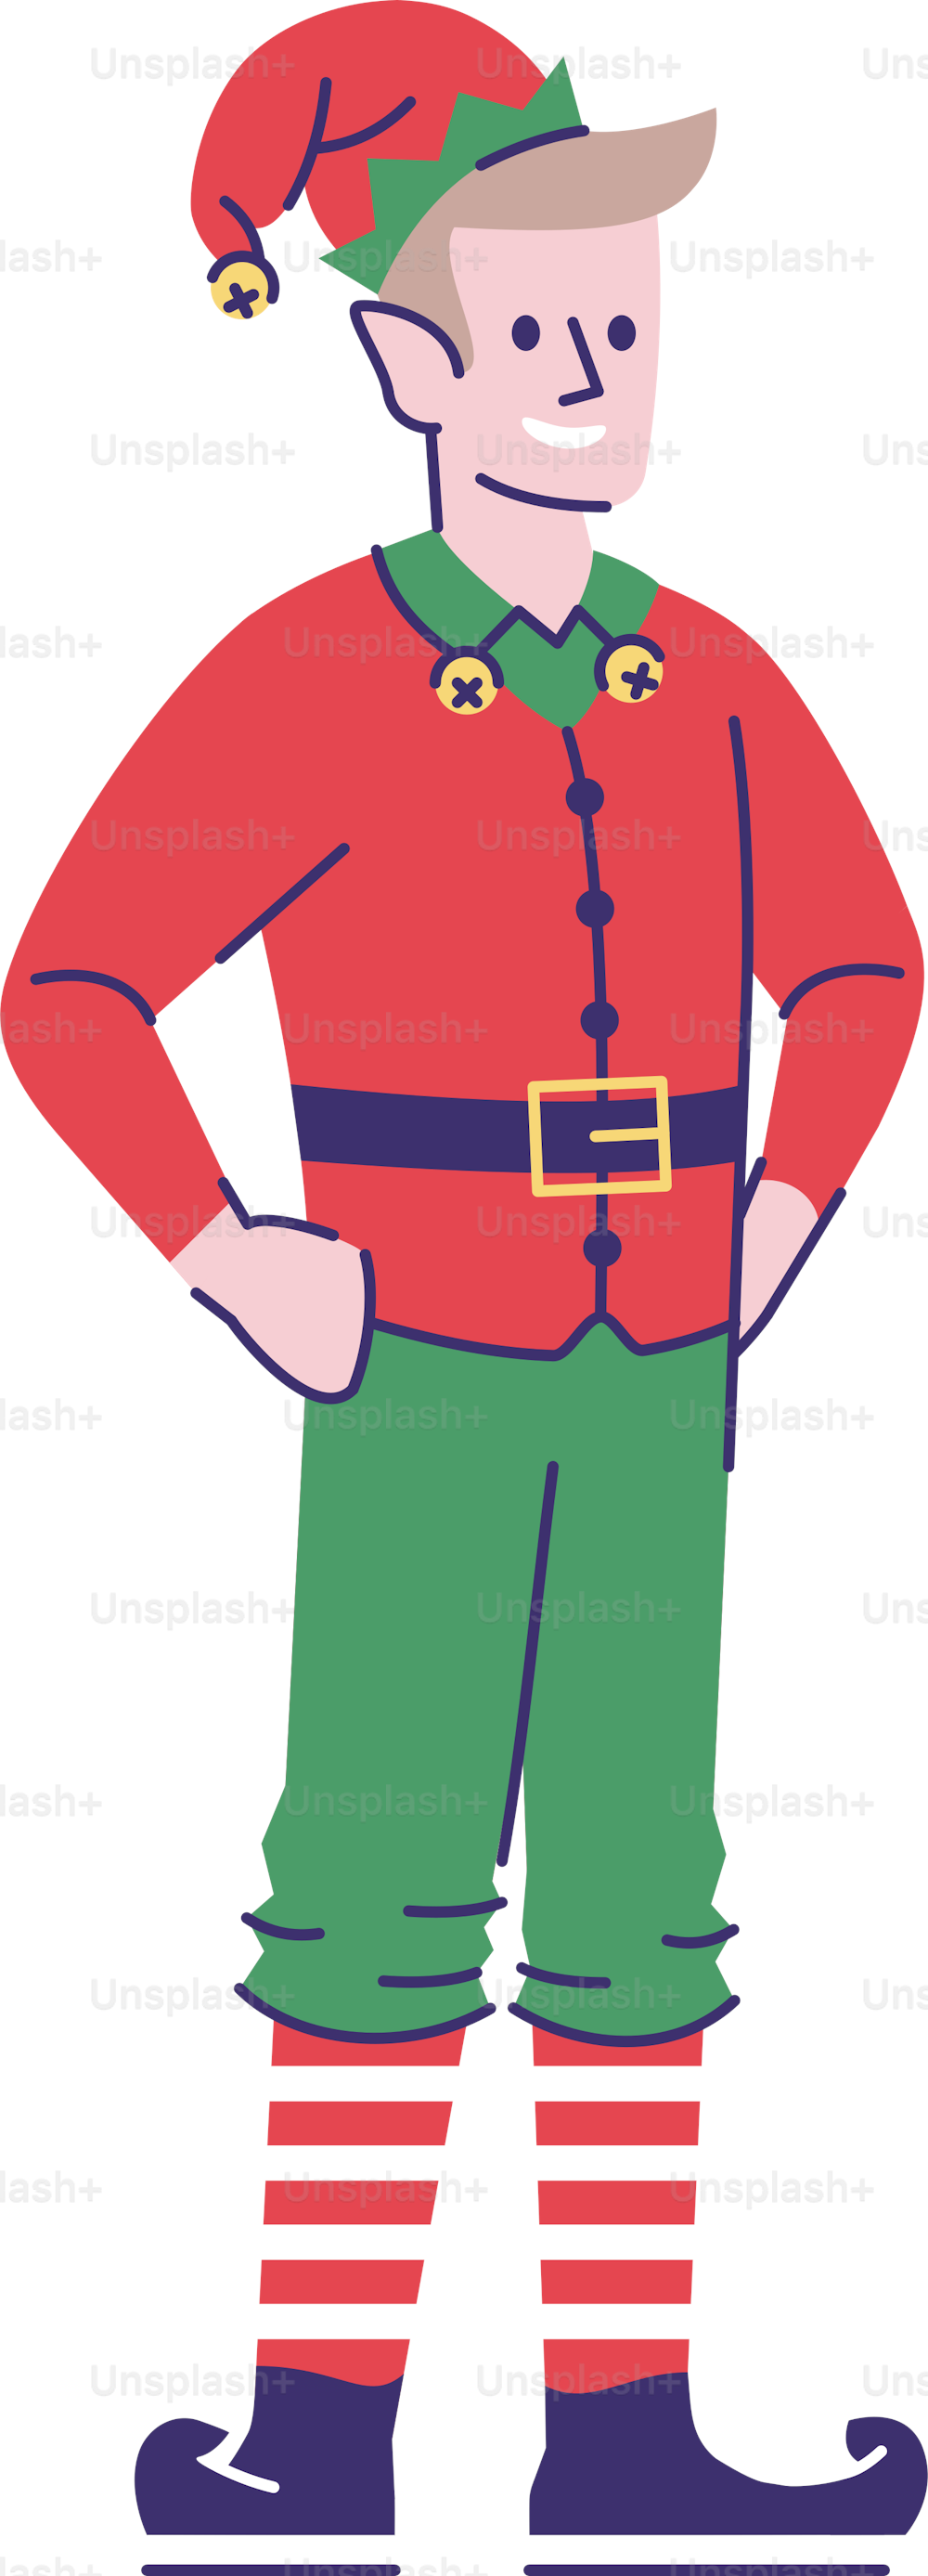 Mann trägt Elfenkostüm flache Vektorillustration. Kobold-Zeichentrickfigur mit Umrisselementen isoliert auf weißem Hintergrund. Festliches Weihnachtsfest. Weihnachtsmann Hepler Weihnachtskostüm